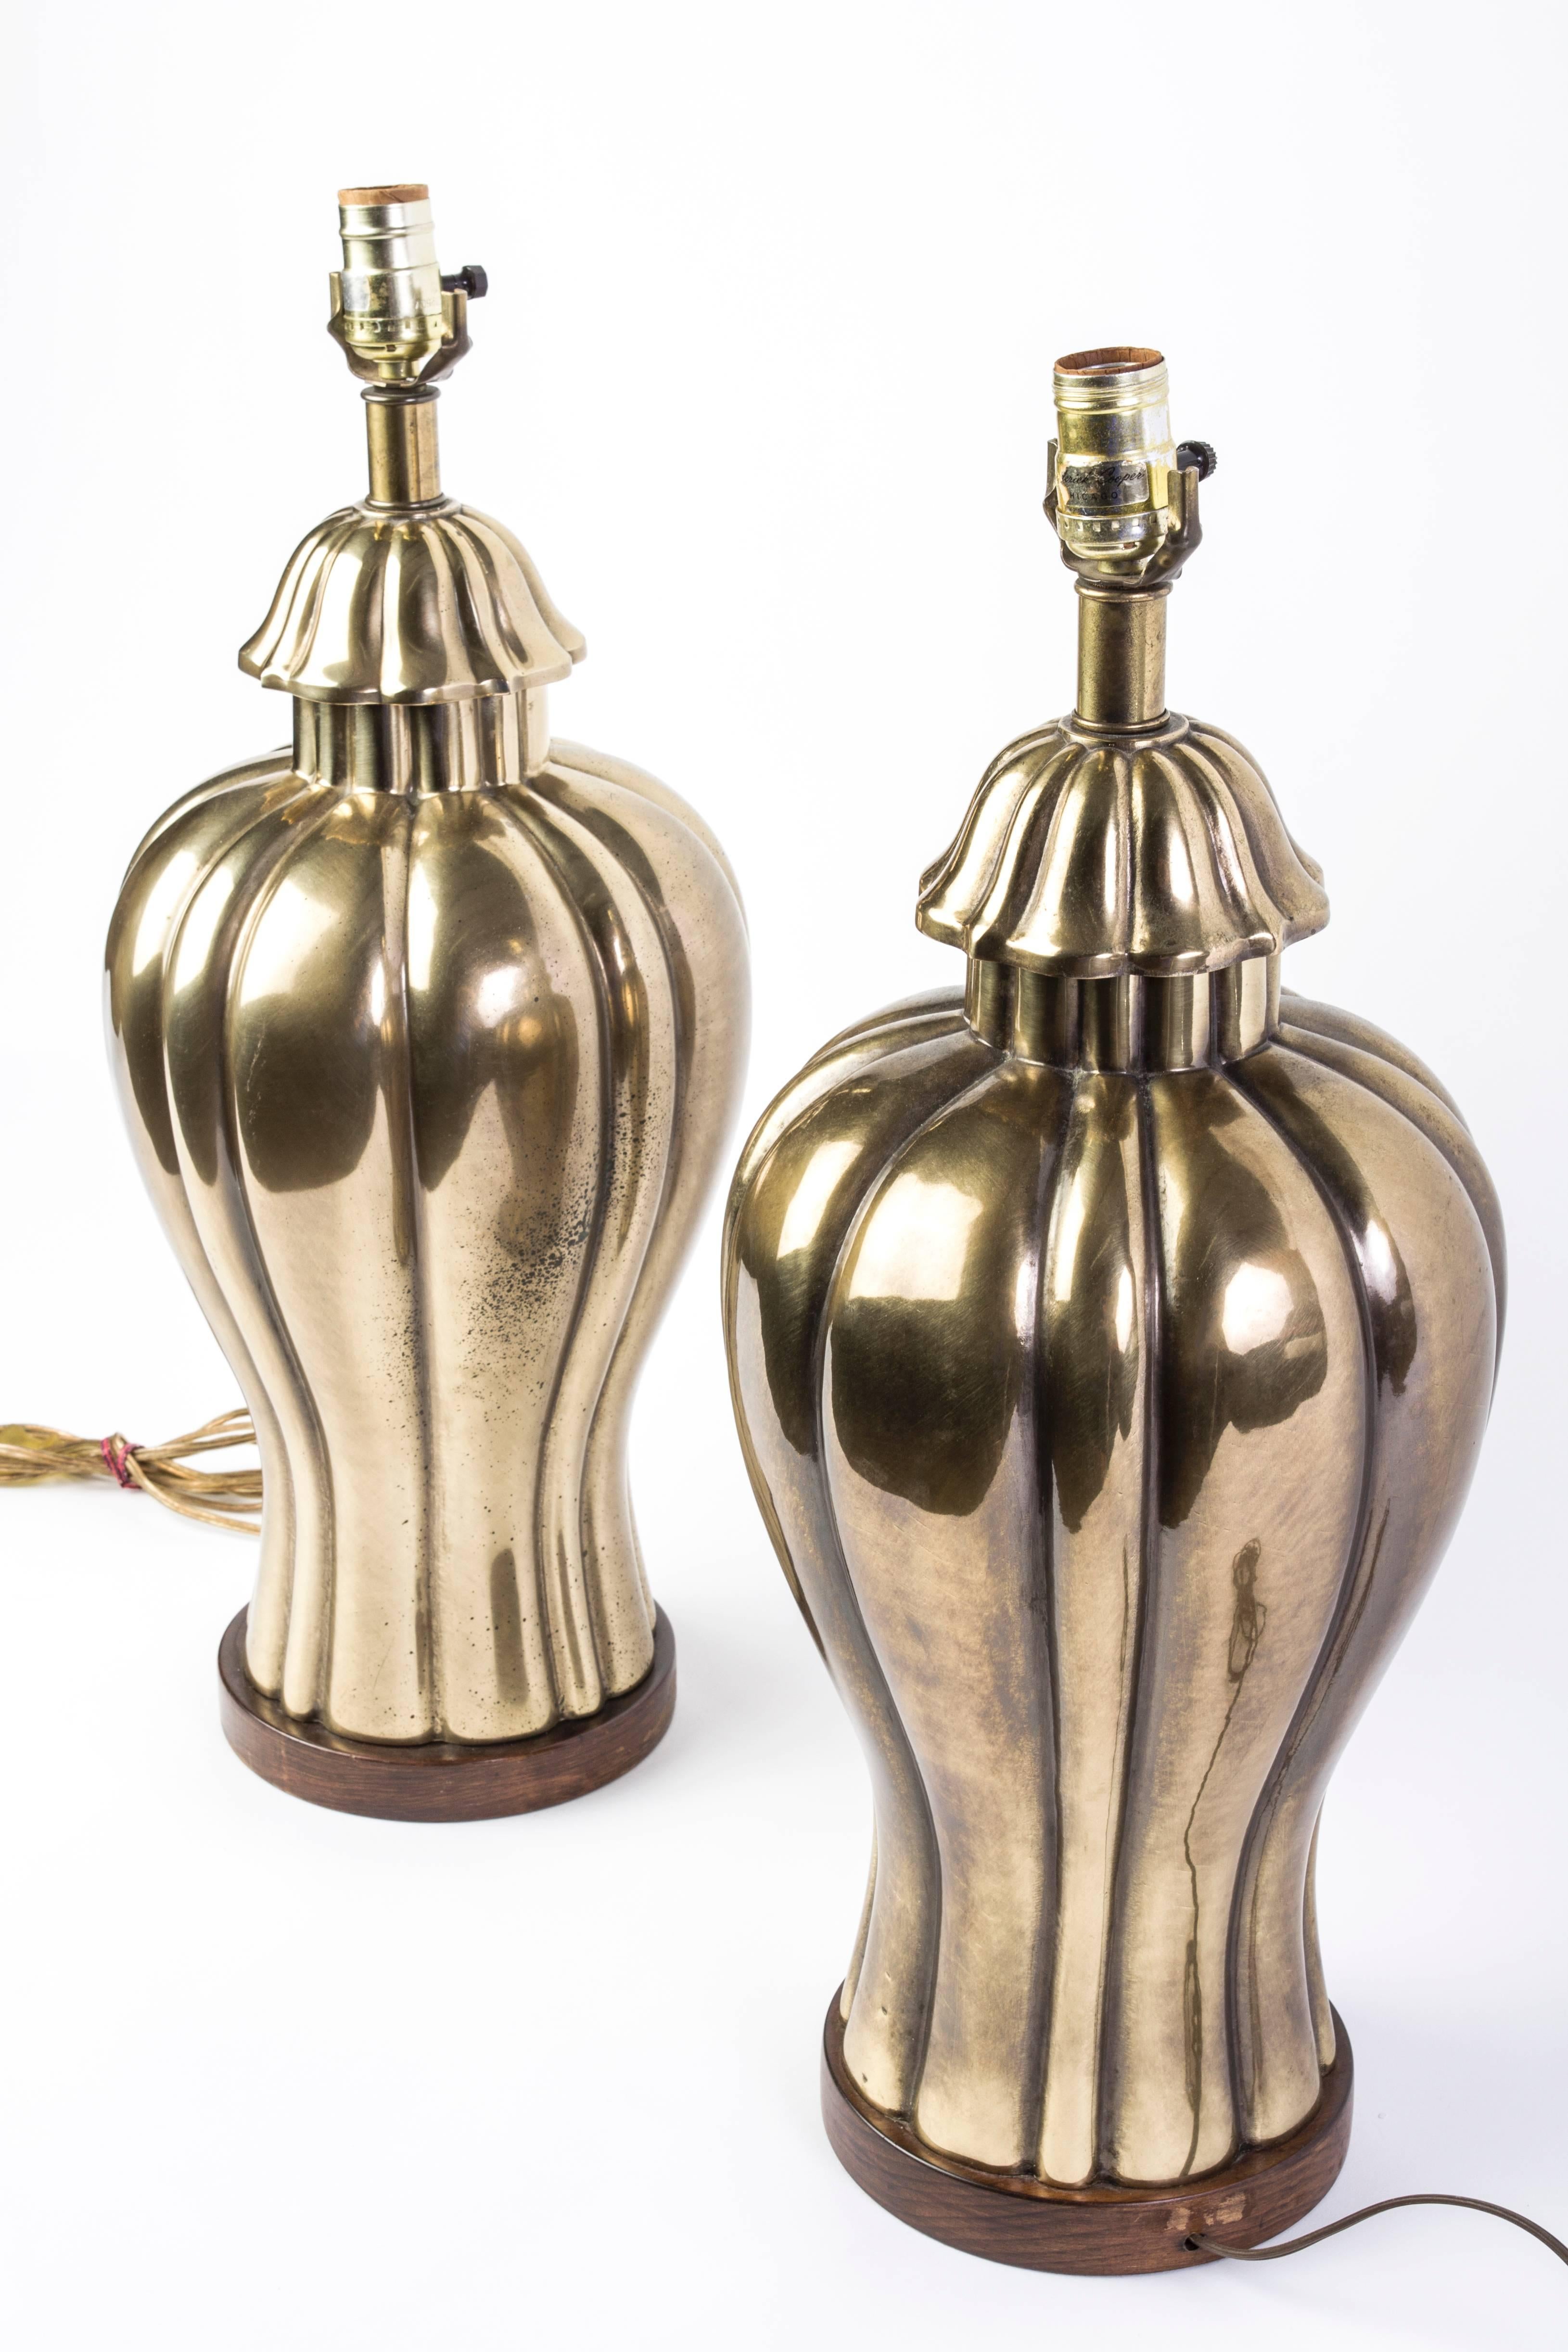 Dieses elegante Paar Frederick Cooper Messinglampen aus den 1970er Jahren ist aus massivem Messing gefertigt und befindet sich in ausgezeichnetem Originalzustand. Eine Lampe trägt noch den originalen goldenen Frederick Cooper-Aufkleber.